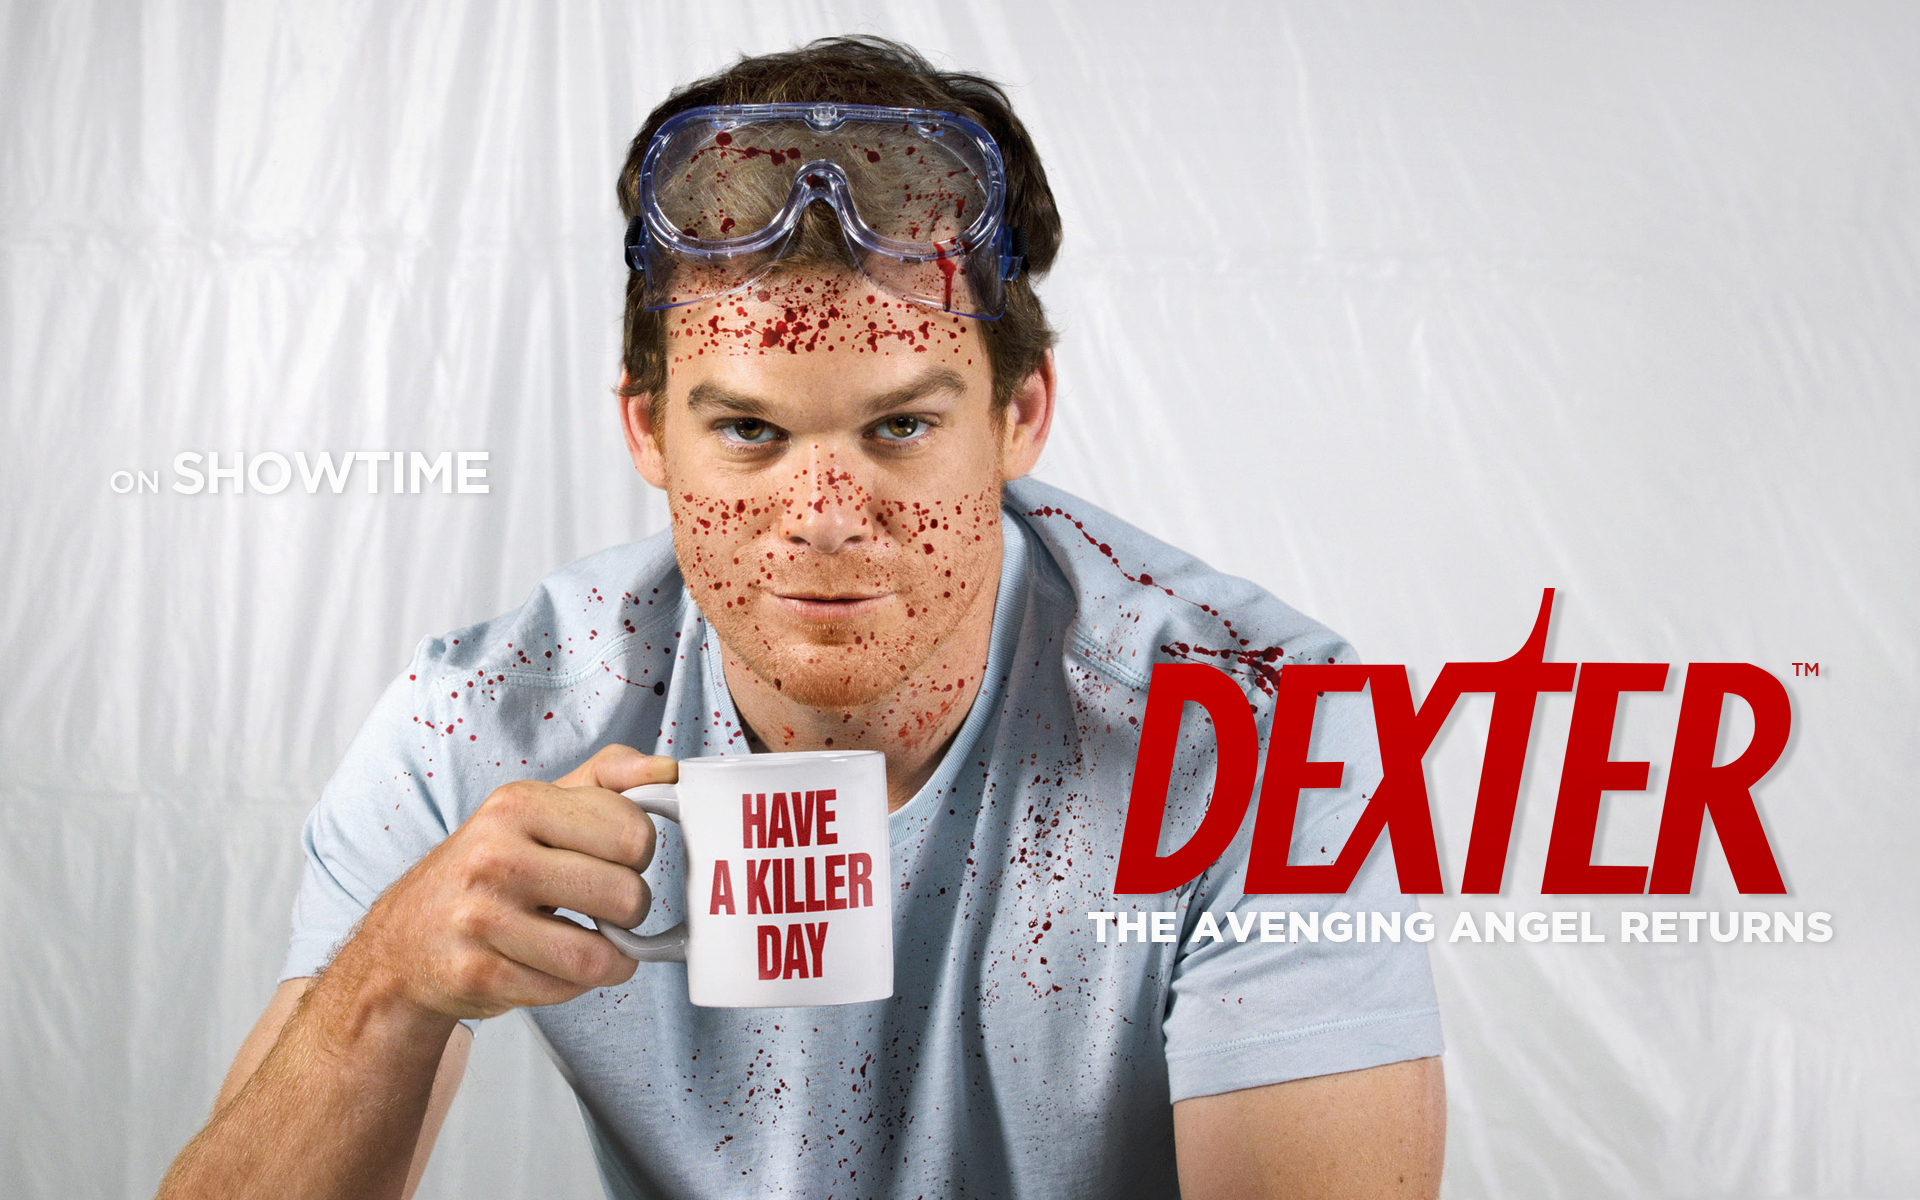 The Unworthy Dexter Erwinres